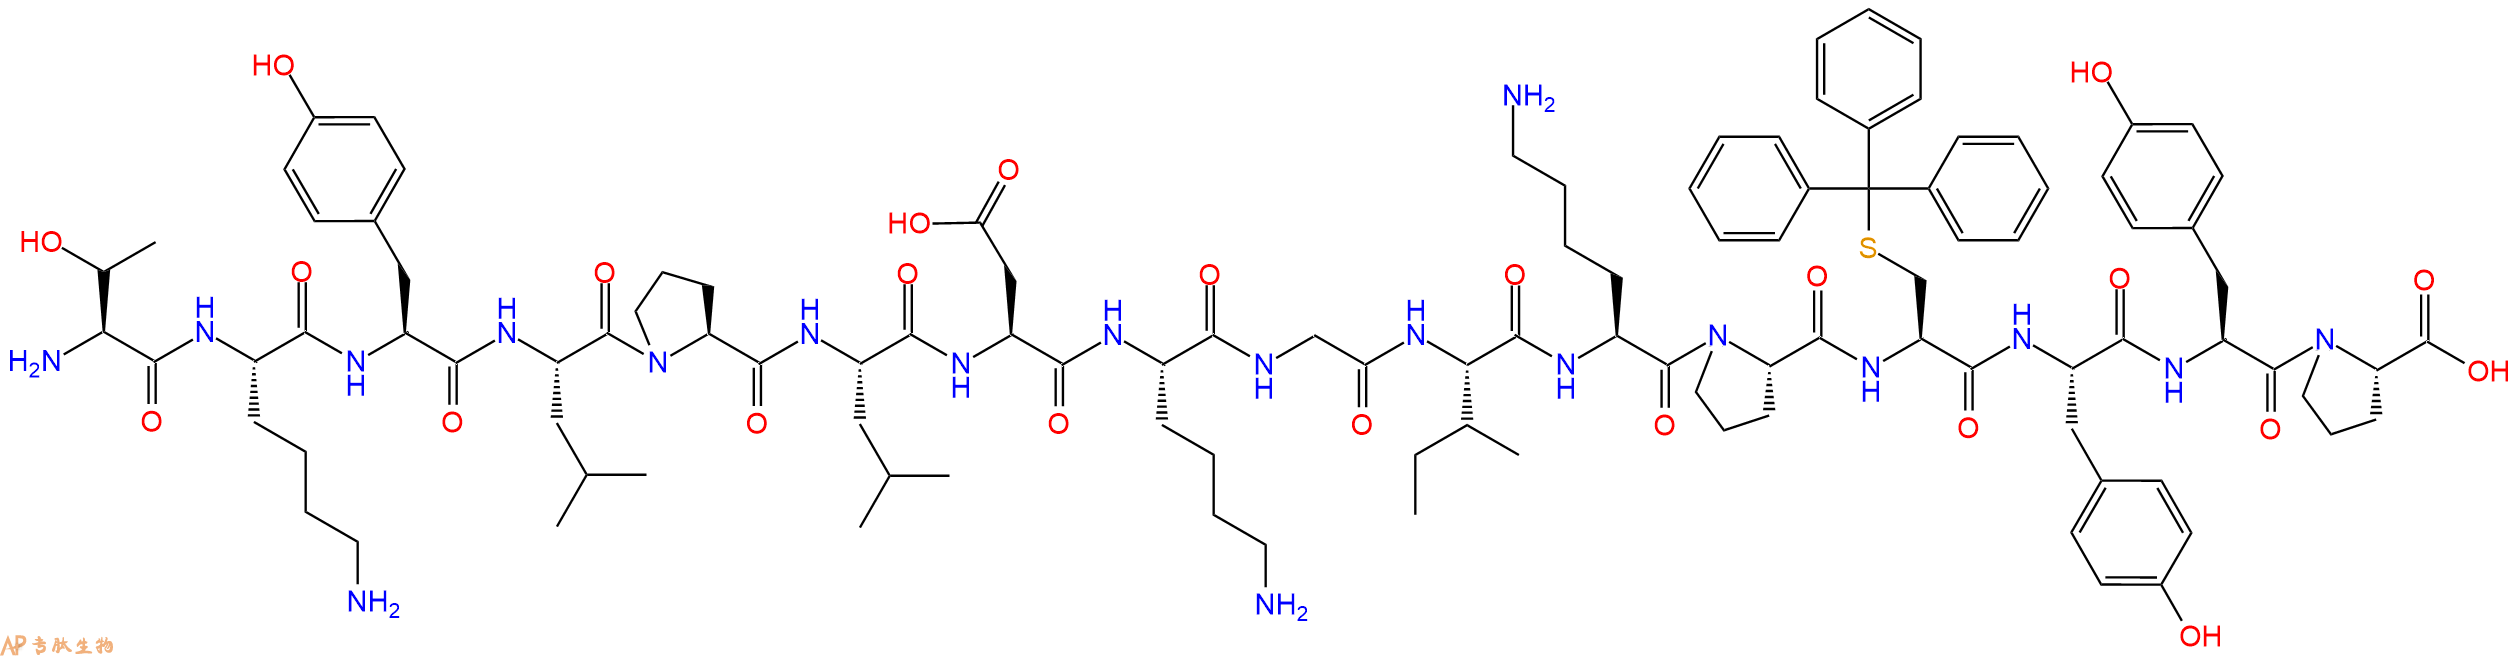 专肽生物产品H2N-Thr-Lys-Tyr-Leu-Pro-Leu-Asp-Lys-Gly-Ile-Lys-Pr